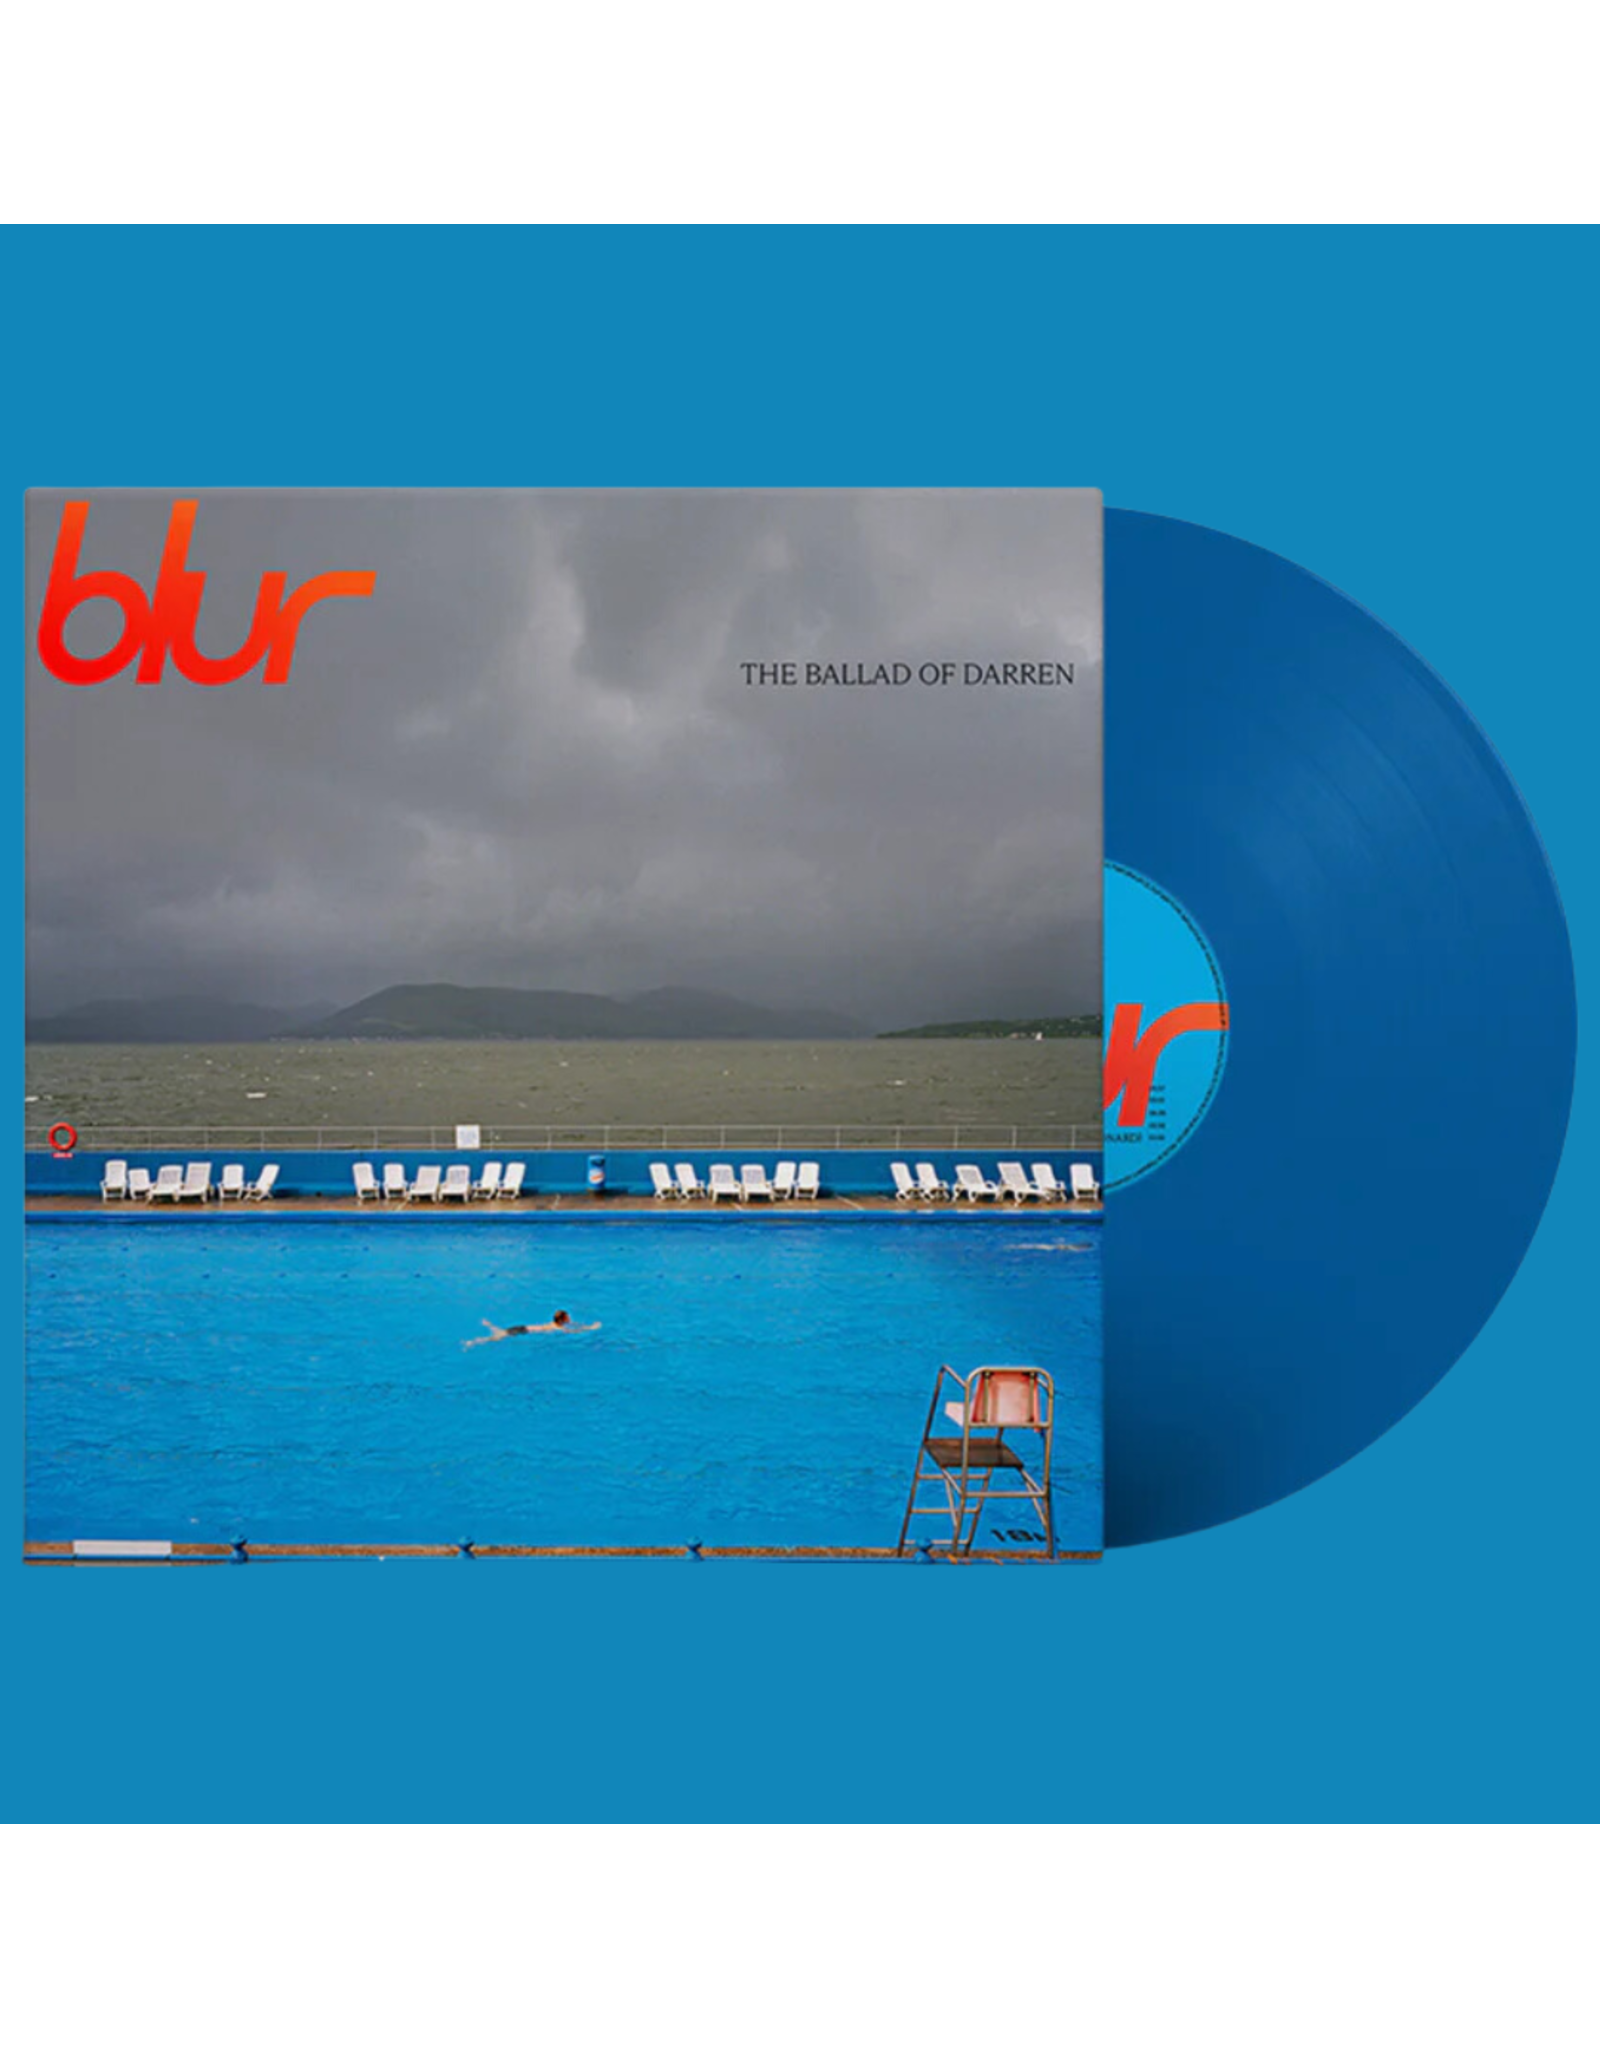 Blur - The Ballad of Darren (Exclusive Ocean Blue Vinyl)